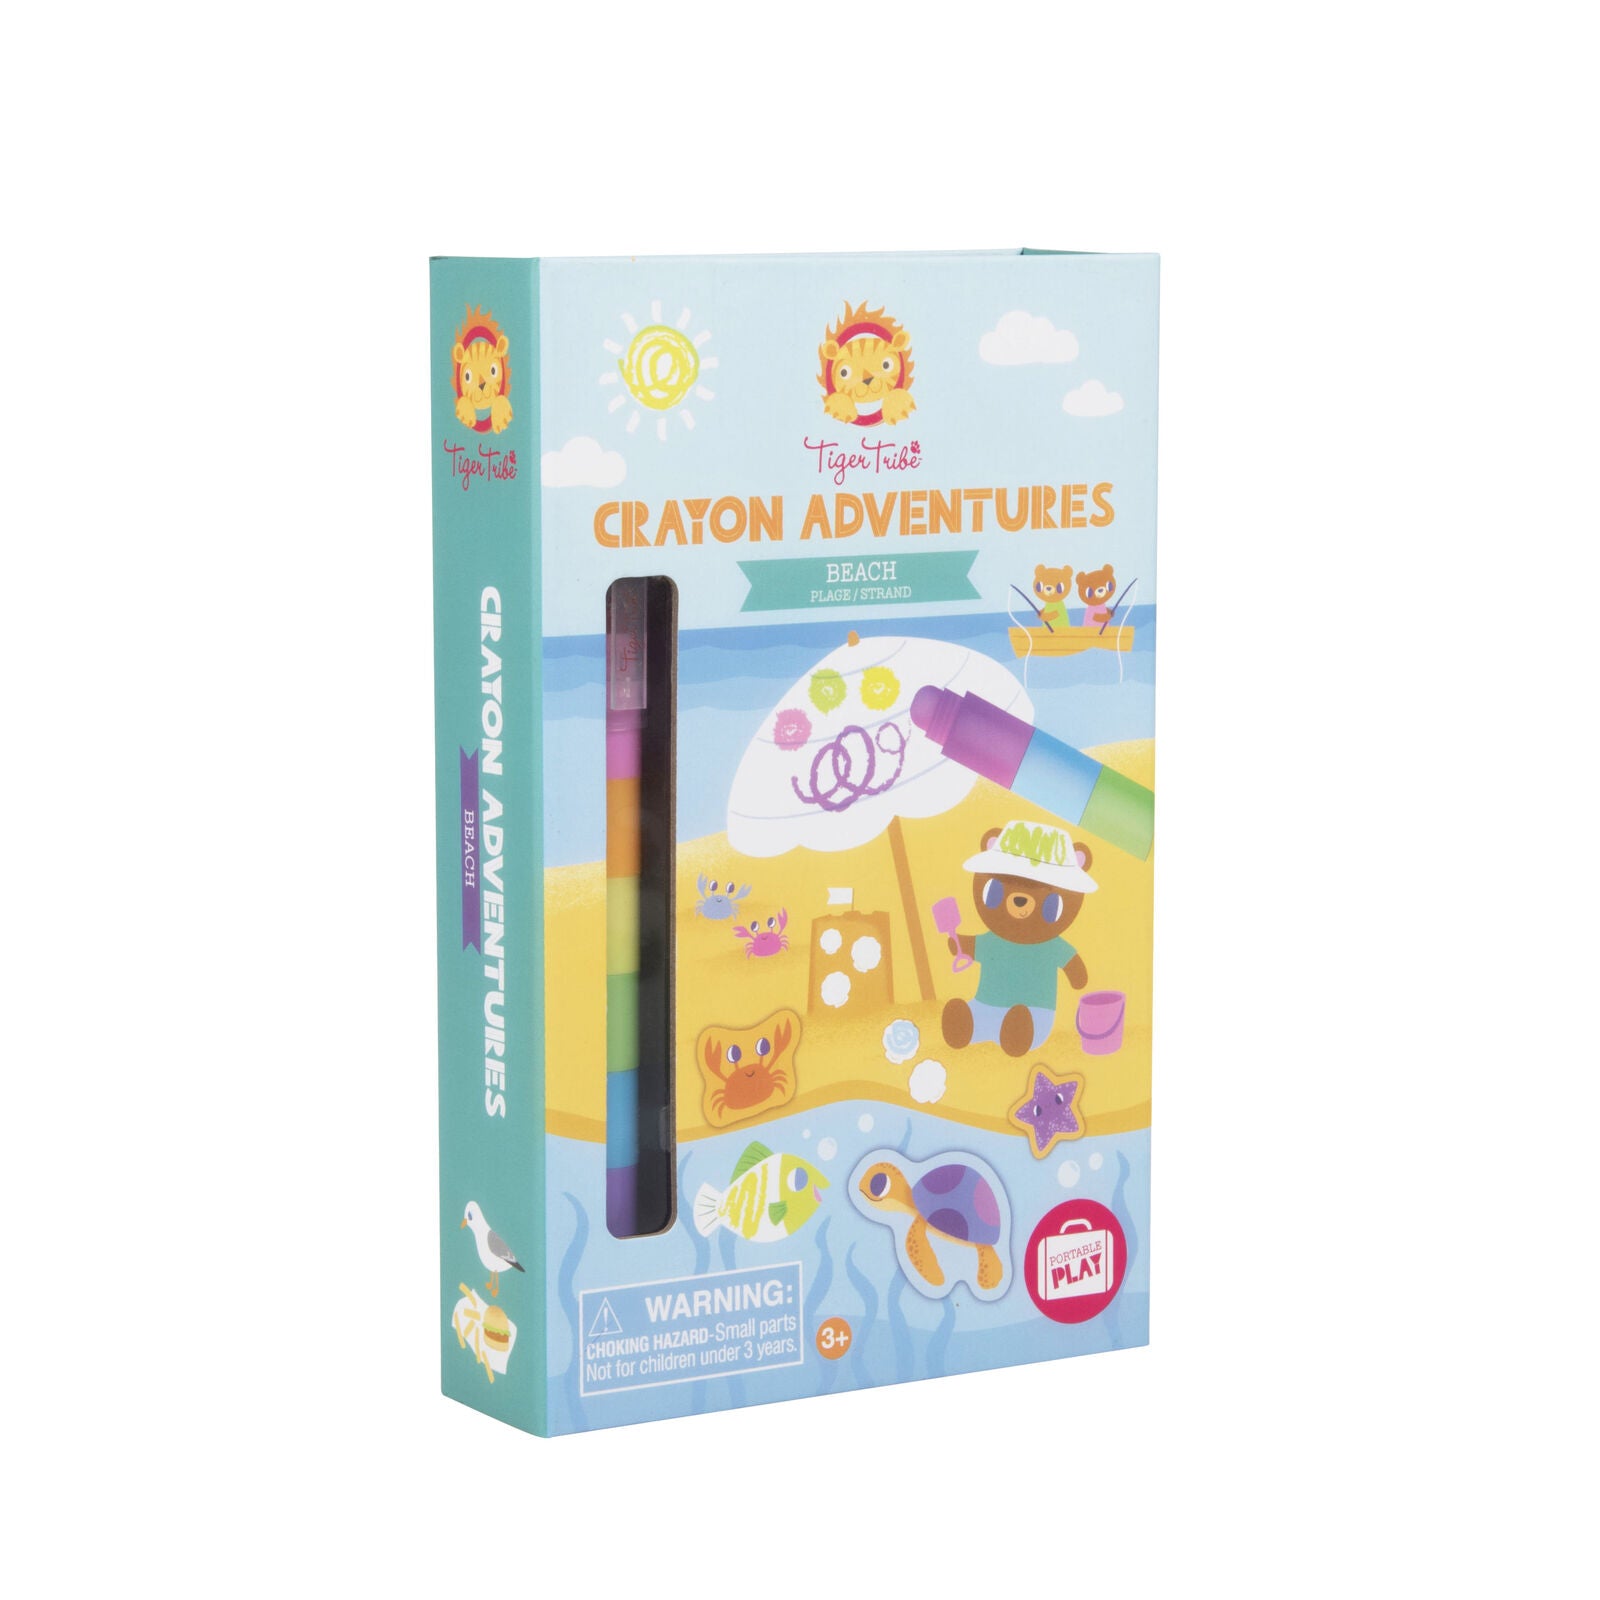 Crayon Adventures - Beach